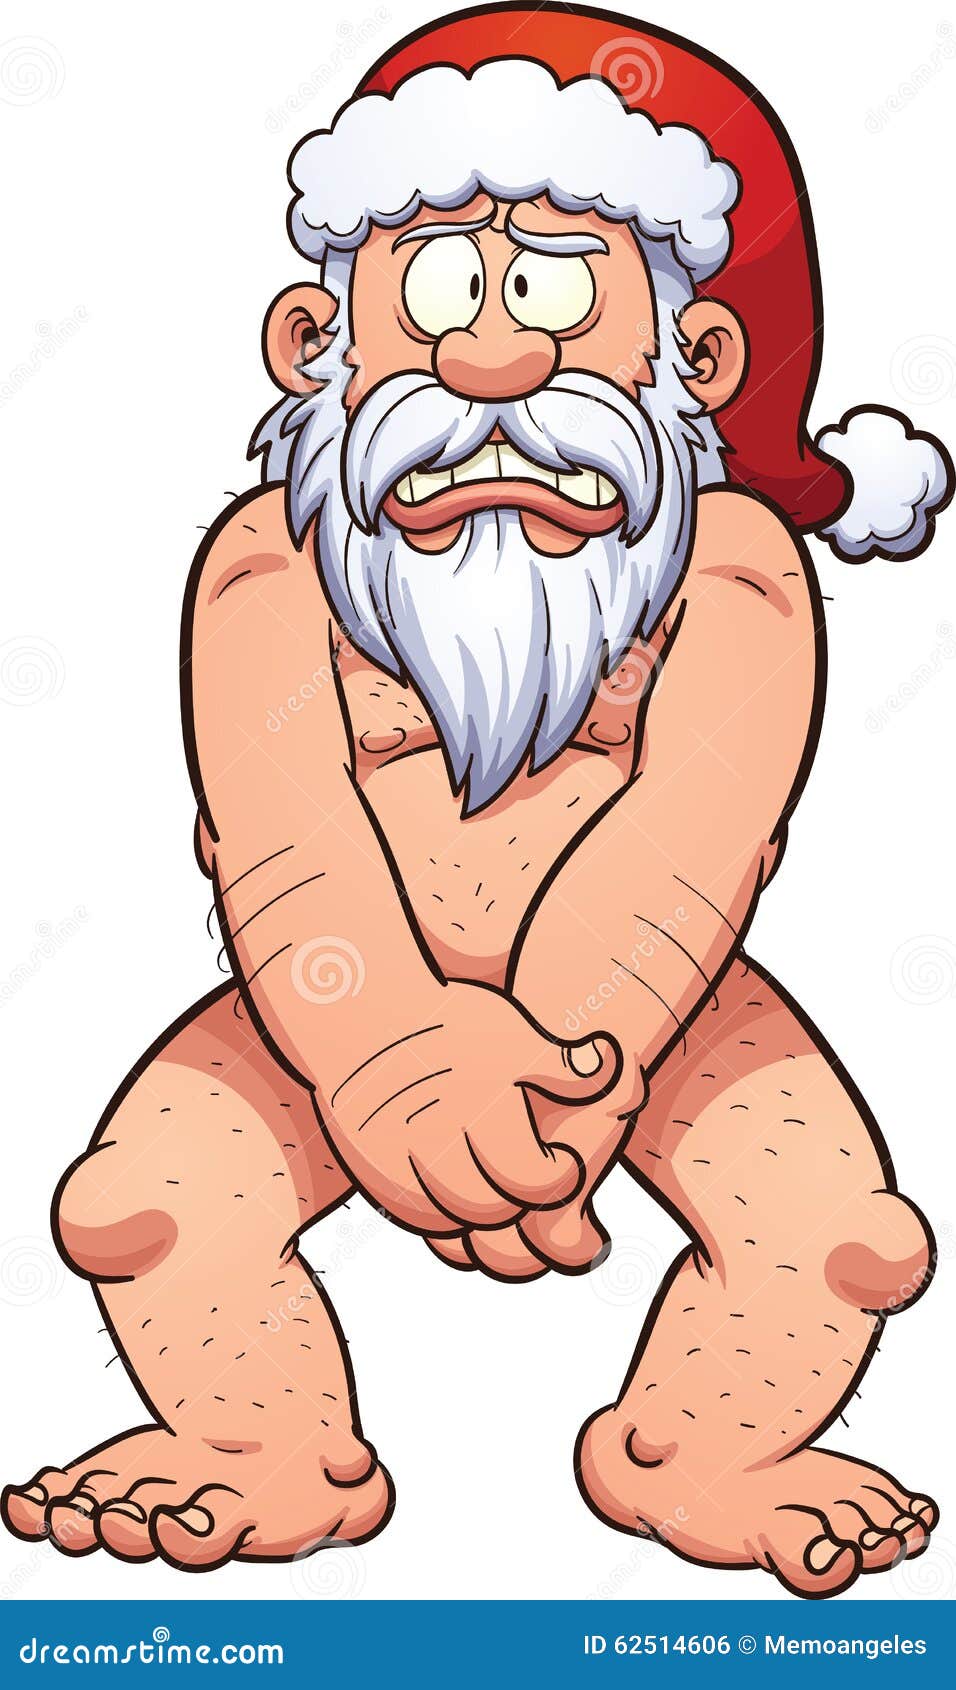 Naked Santa Pics panties compilation